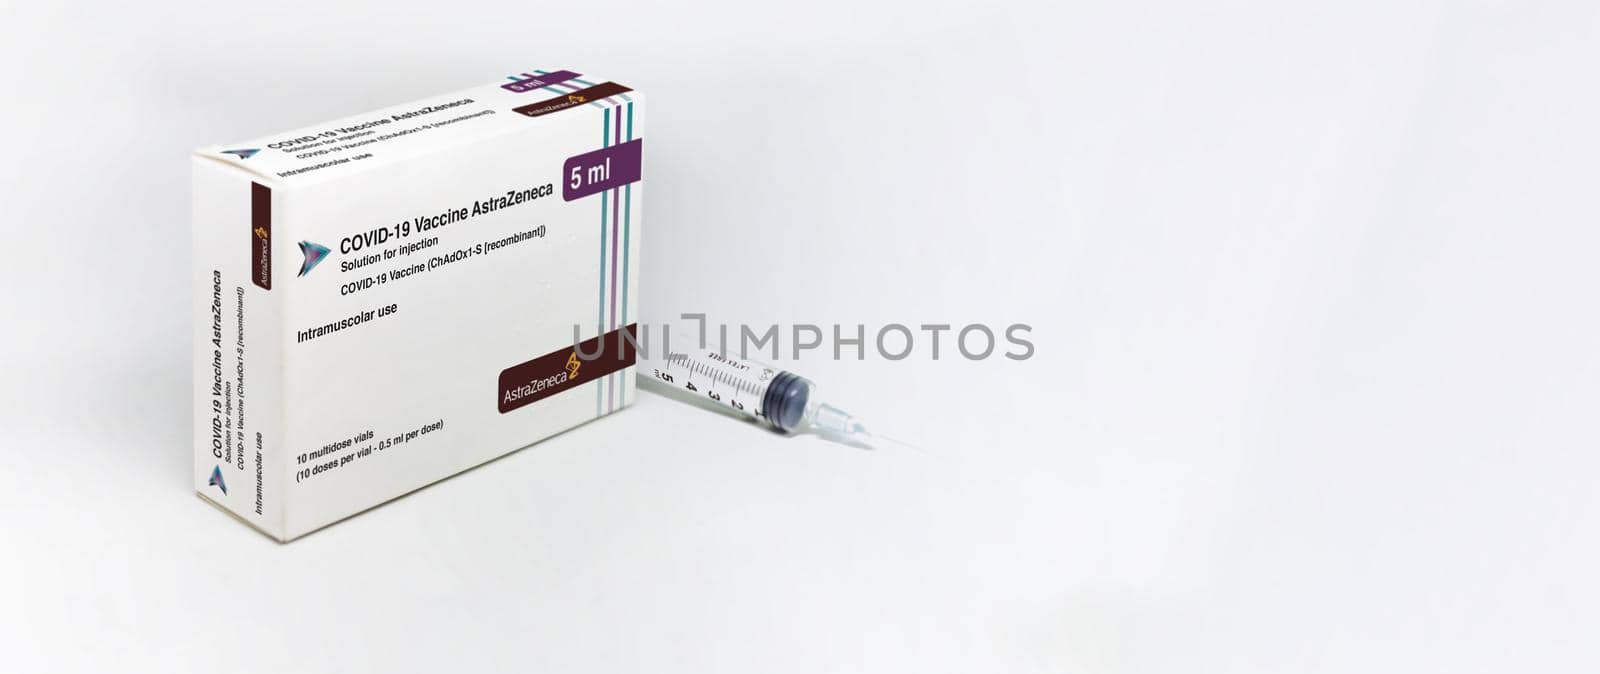 Cambridge, UK, february 5th 2021: A syringe next to the AstraZeneca Covid-19 Vaxzevria vaccine box by rarrarorro